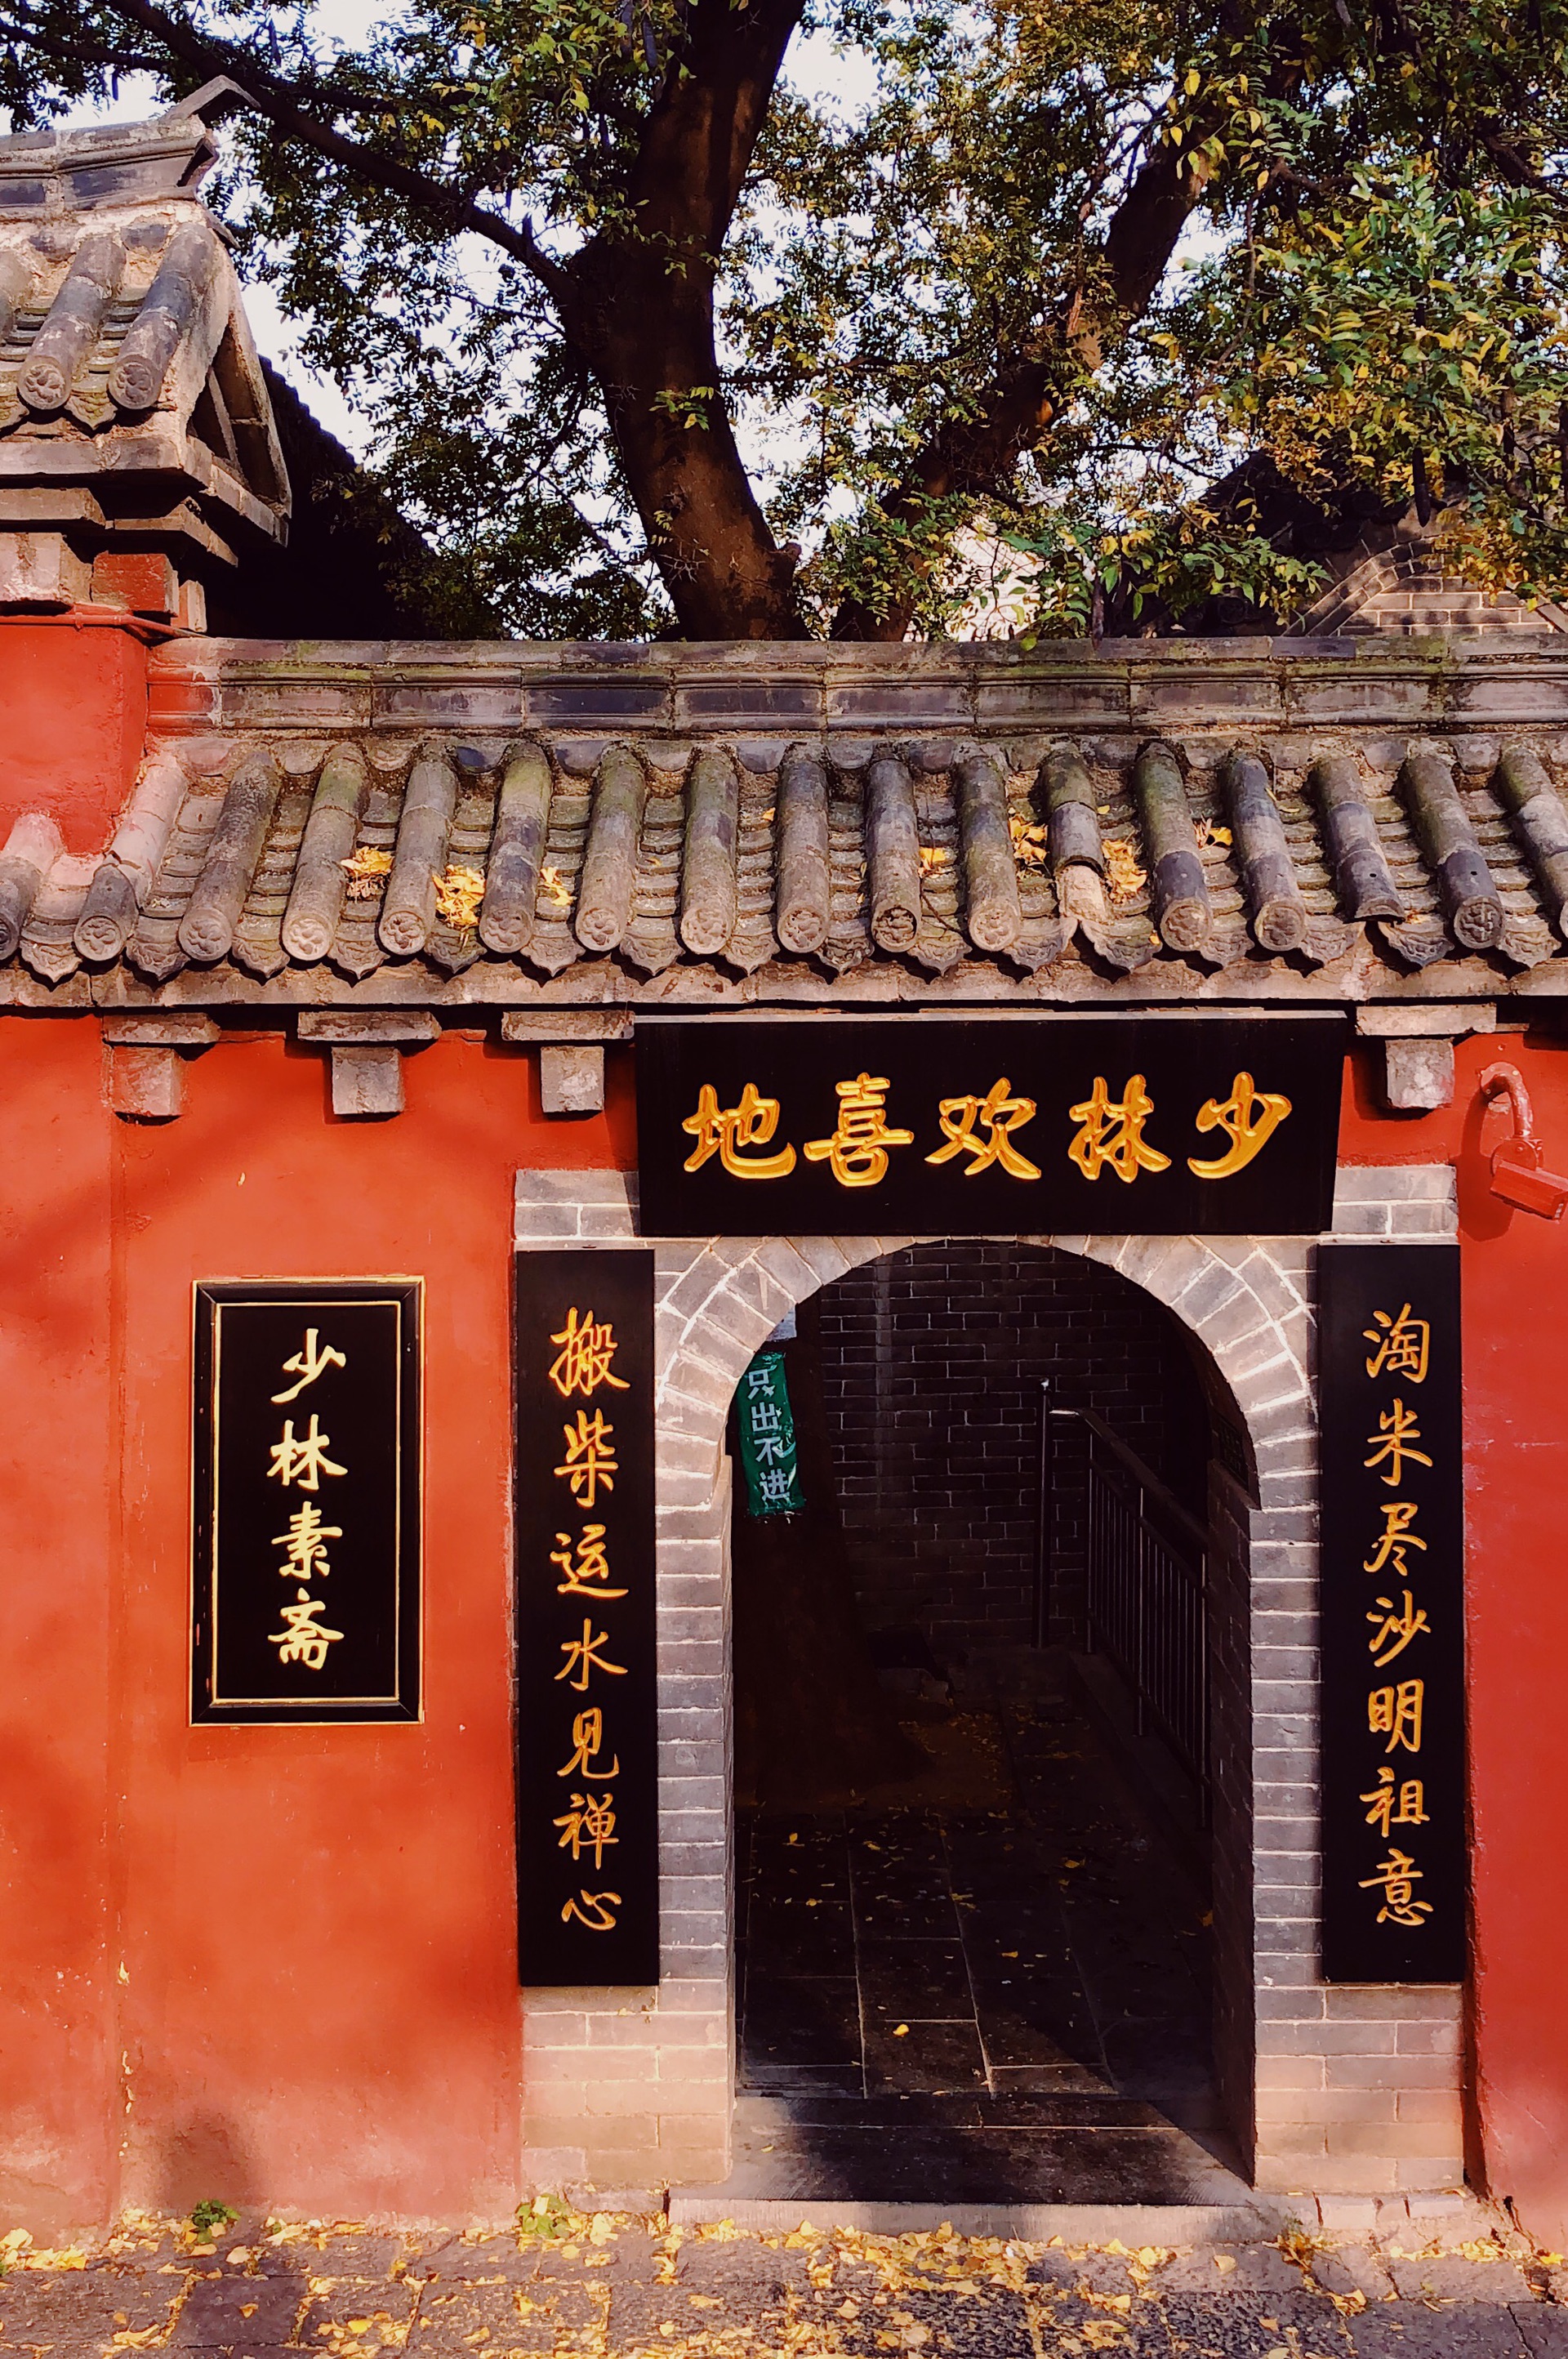 我的少林梦对作为来河南旅游的我来说，没去少林寺相当于没去河南